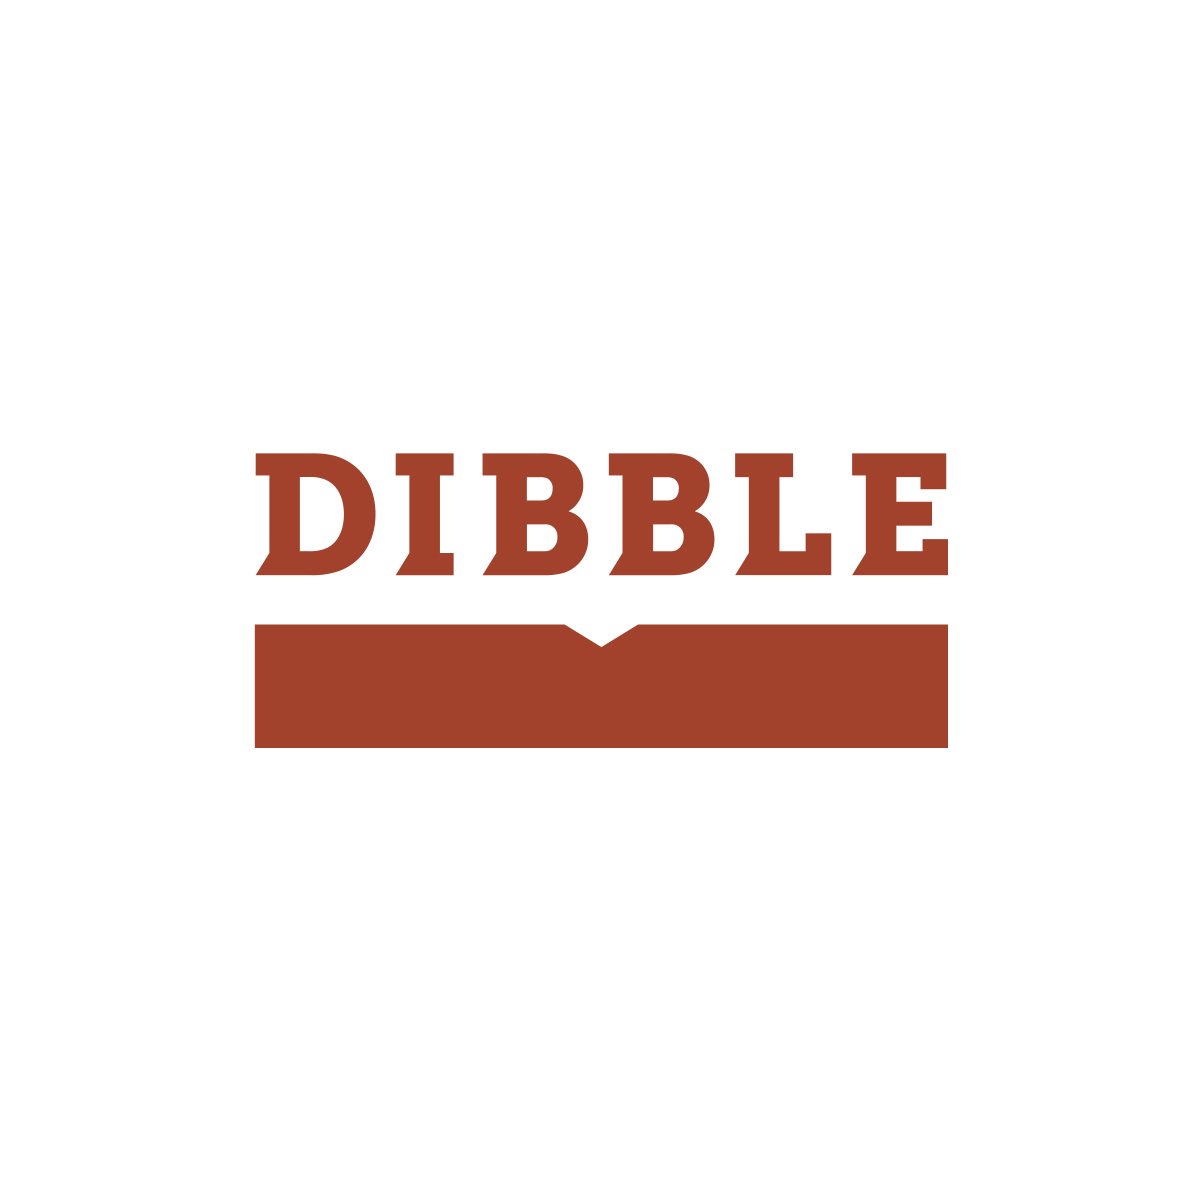 Dibble logo.jpg